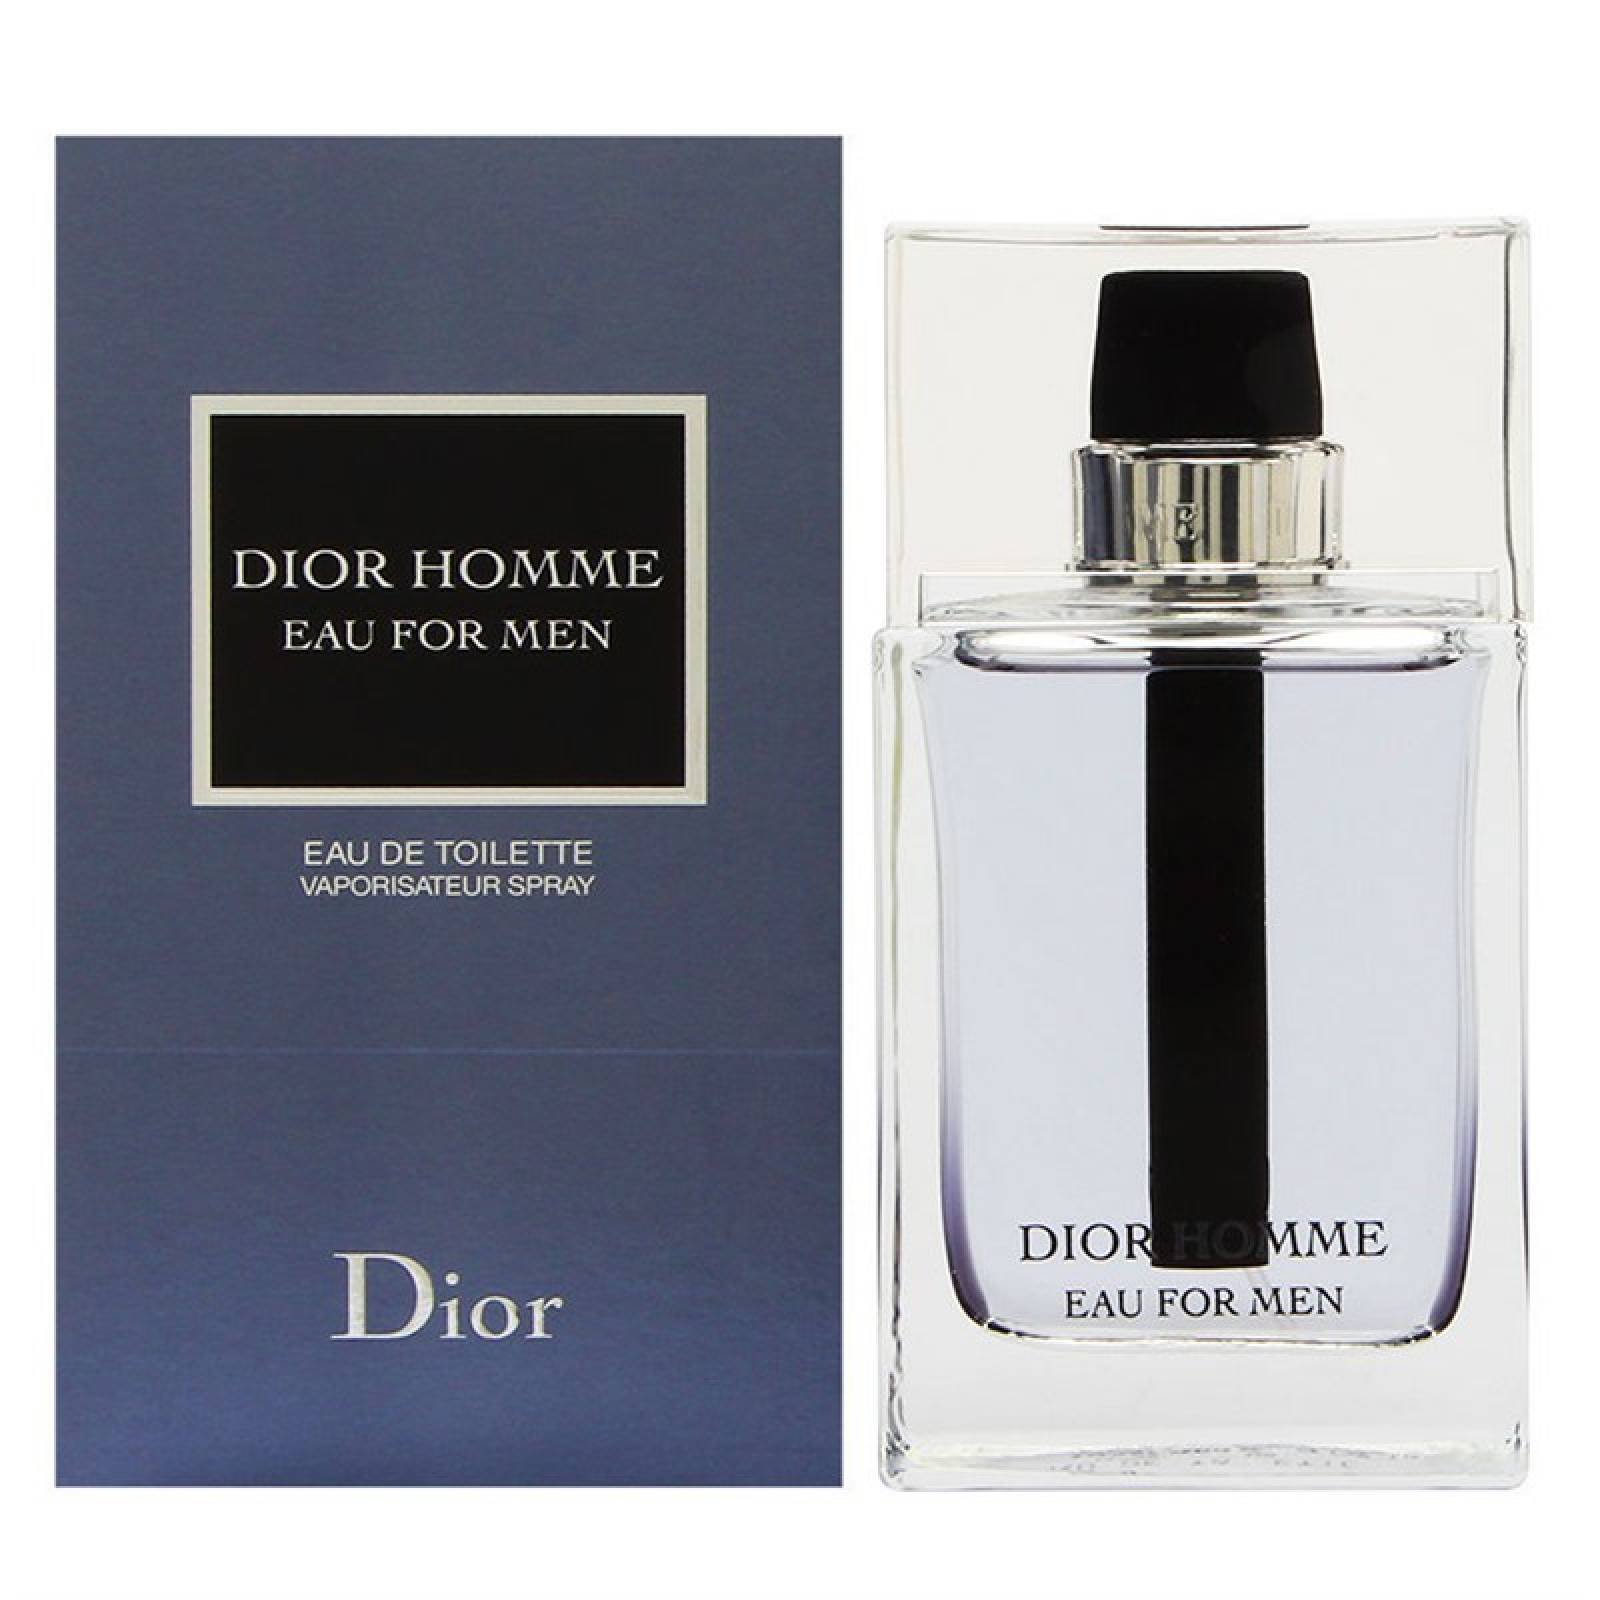 Dior Homme Eau For Men 100 ml de Christian Dior Fragancia para Caballero